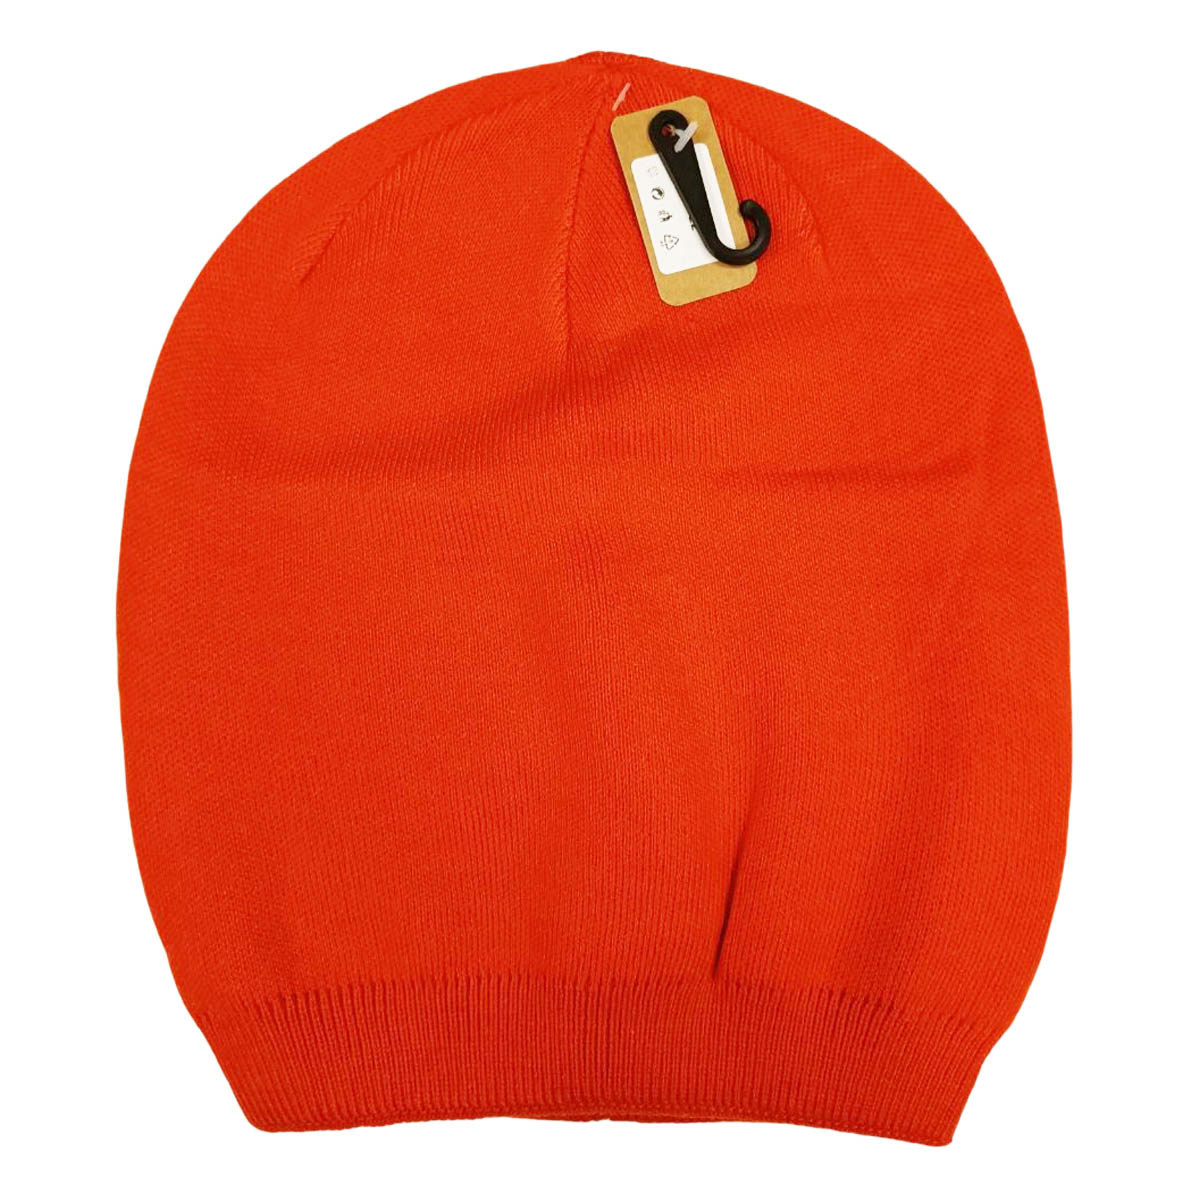 Bonnet laine cachemire \'Highlands\' orange - taille unique - [R8908]